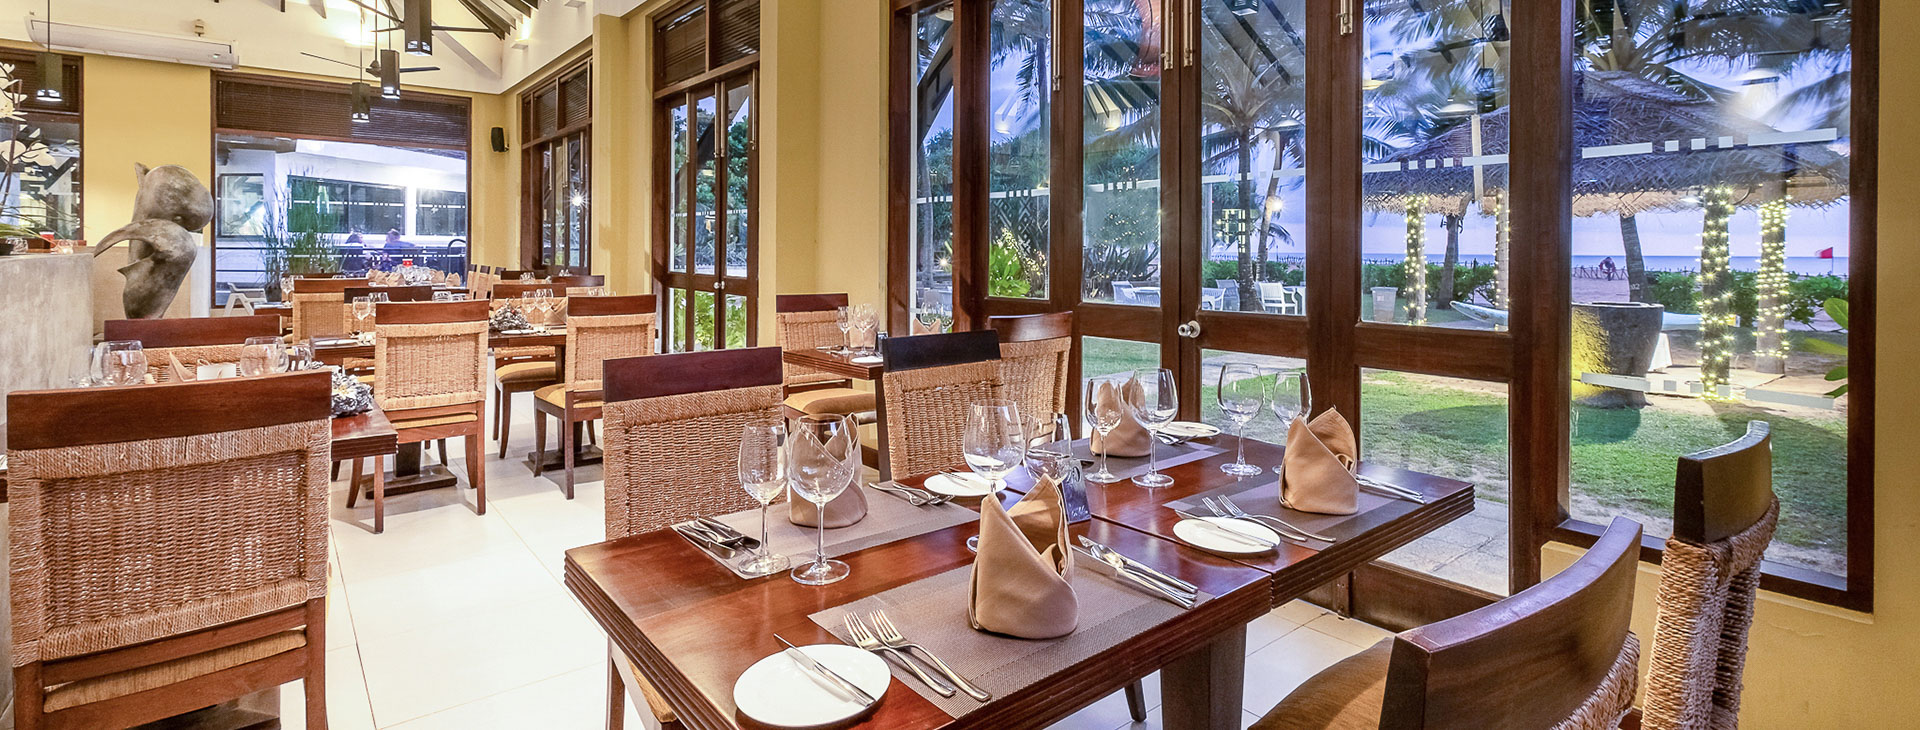 Club Hotel Dolphin - dovolená na Srí Lance Obrázek15